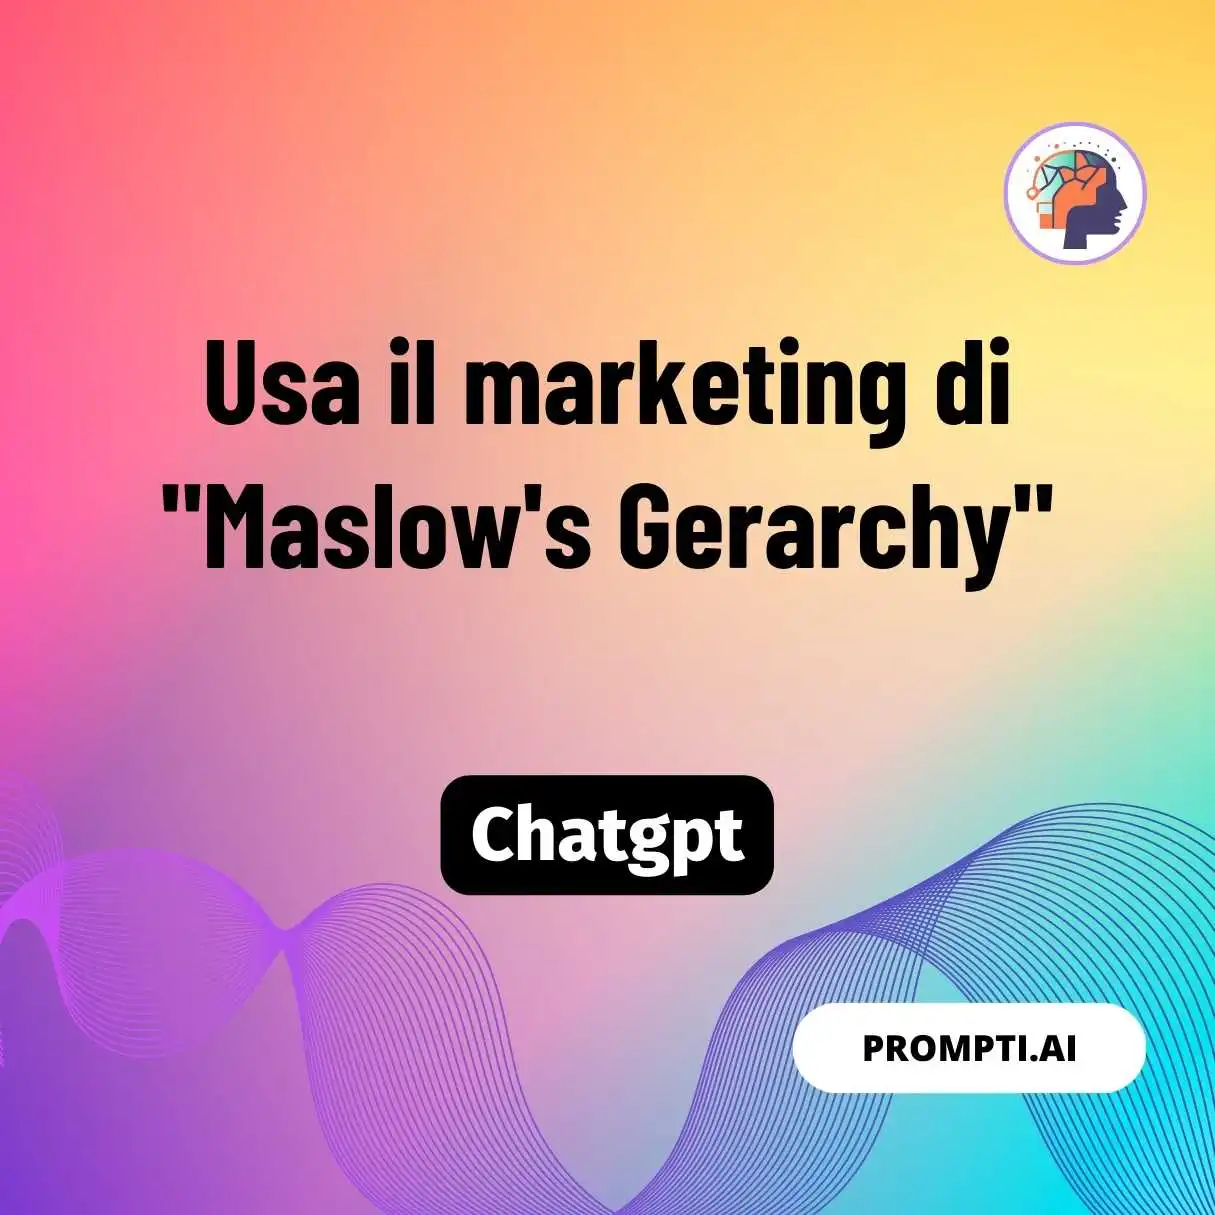 Usa il marketing di “Maslow’s Gerarchy”